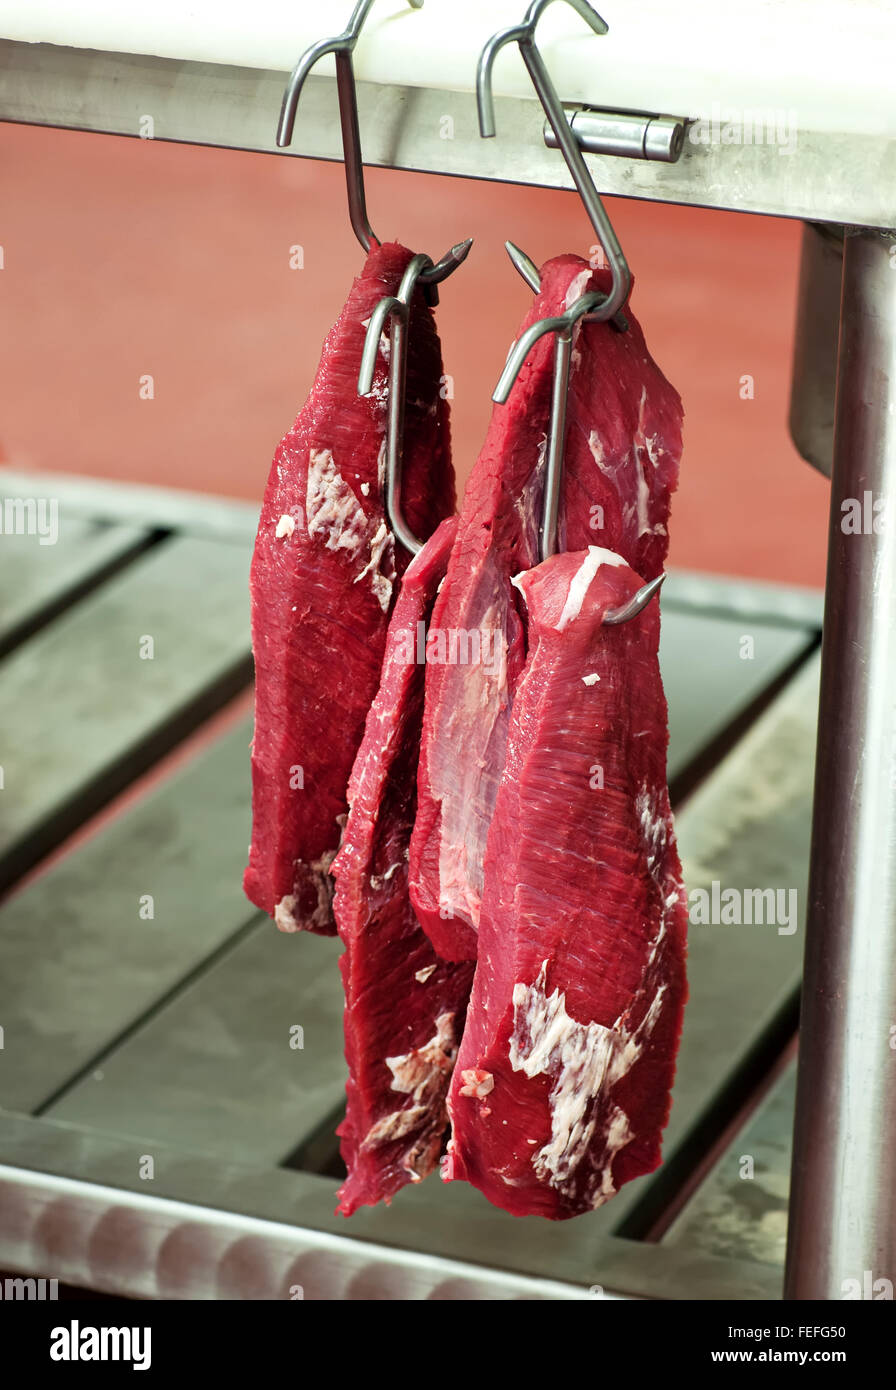 Steak de bœuf maigre filet garni accroché dans une boucherie sur les crochets à viande Banque D'Images